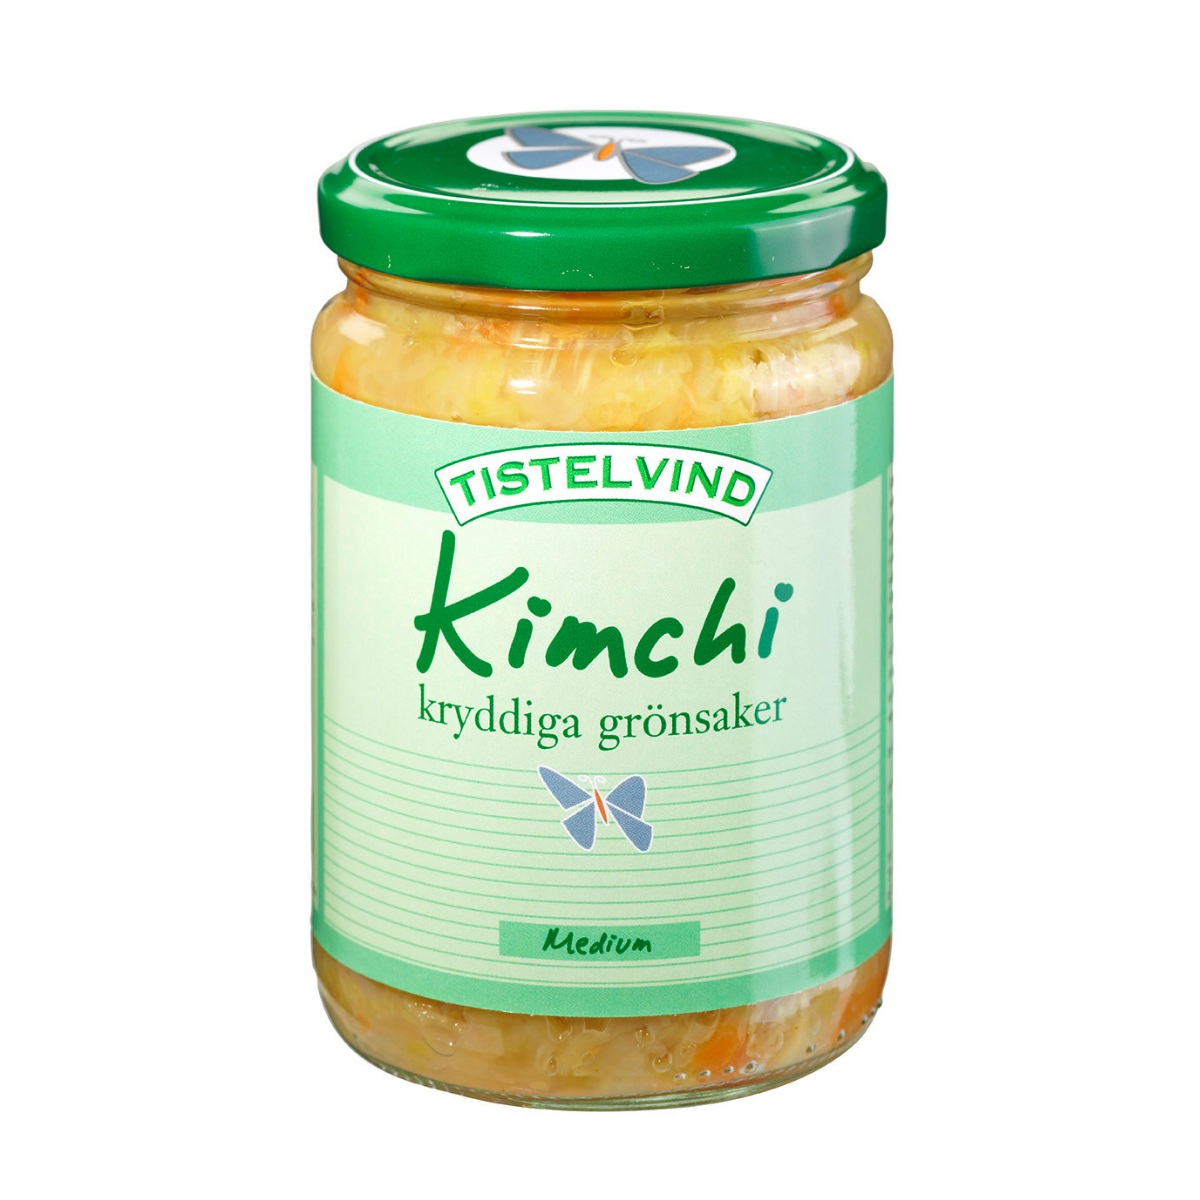 Tistelvind's Kimchi medium'